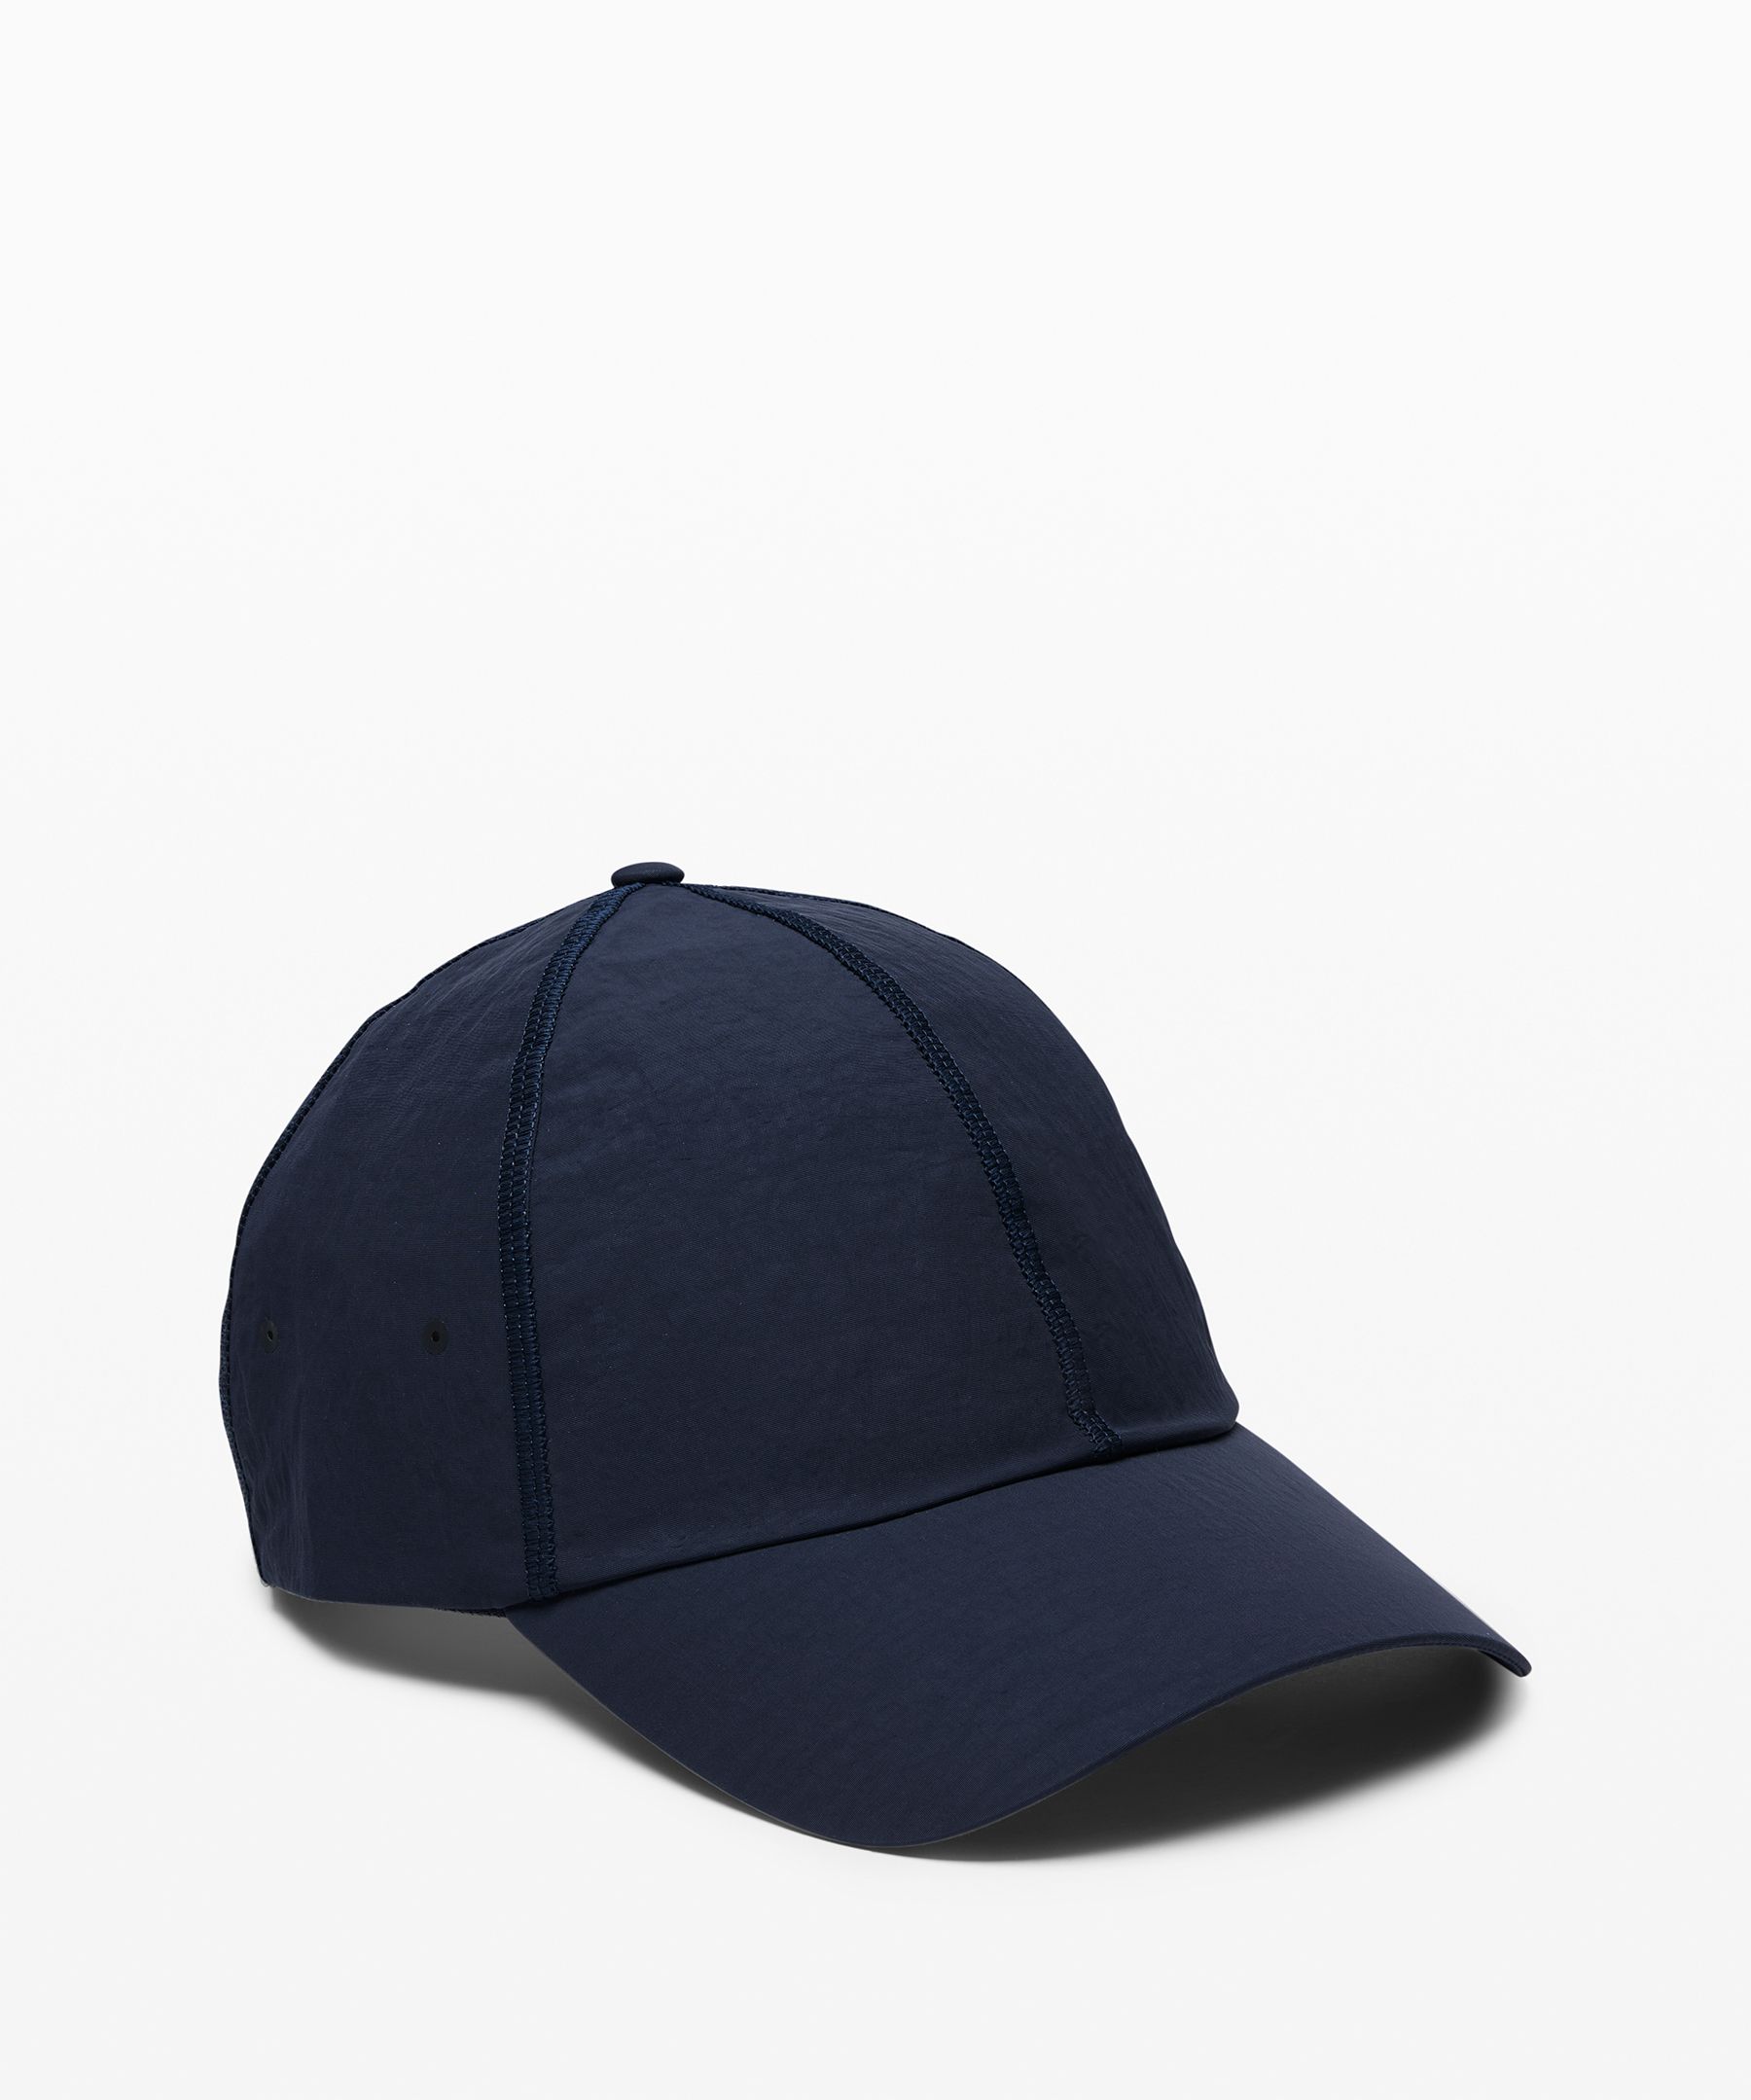 Baller Hat II *Soft | Hats + Hair 